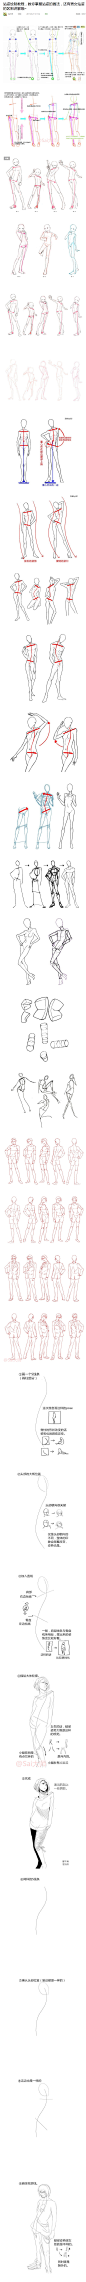 站姿绘制教程，教你掌握站姿的画法，还有男女站姿的区别讲解哦~